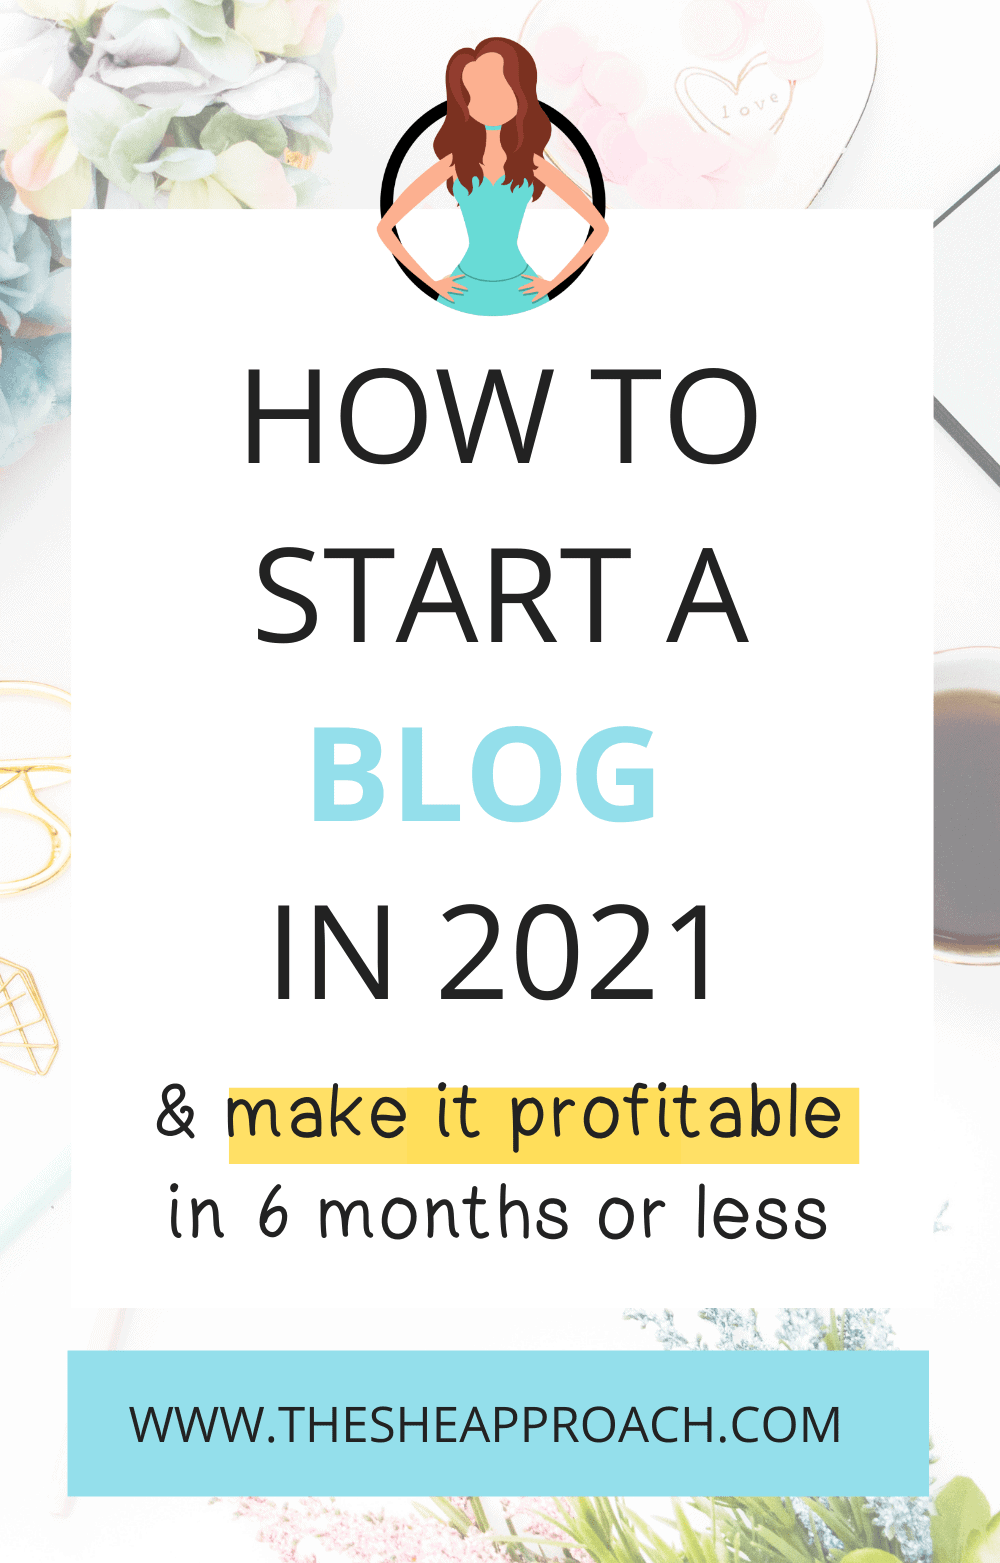 How To Make Blogging Website